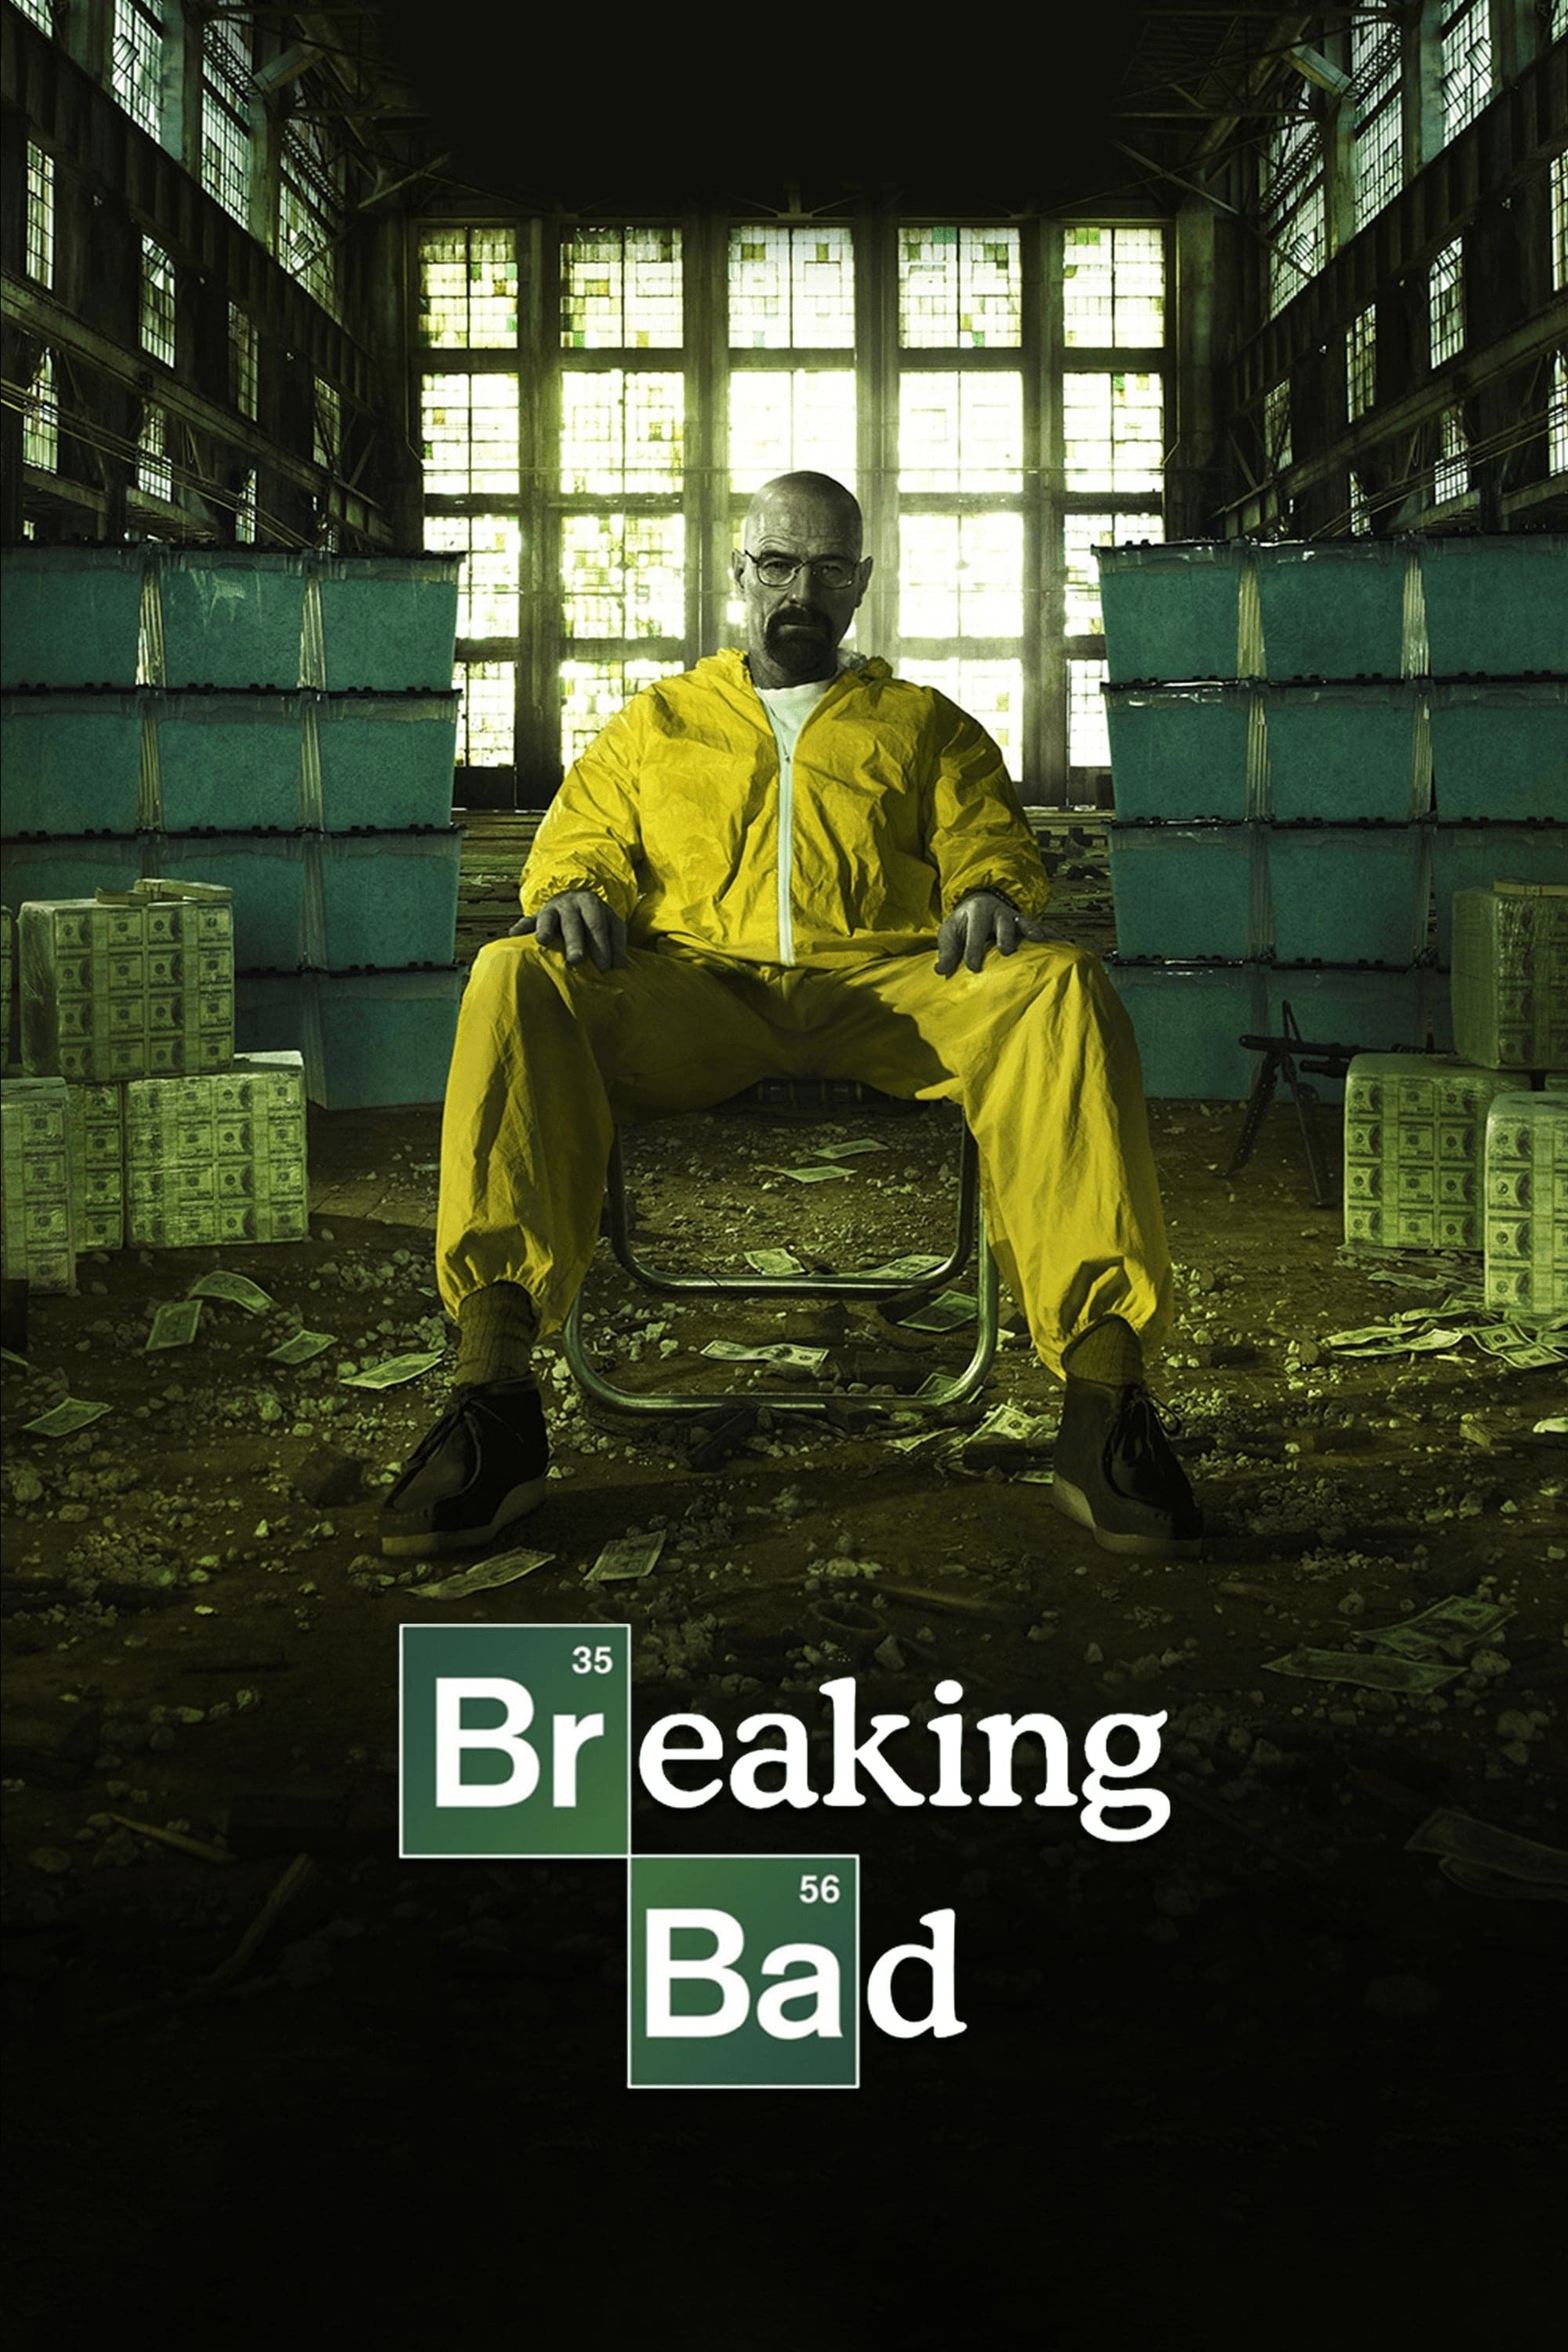 Tập làm người xấu (Phần 5) (Breaking Bad (Season 5)) [2012]